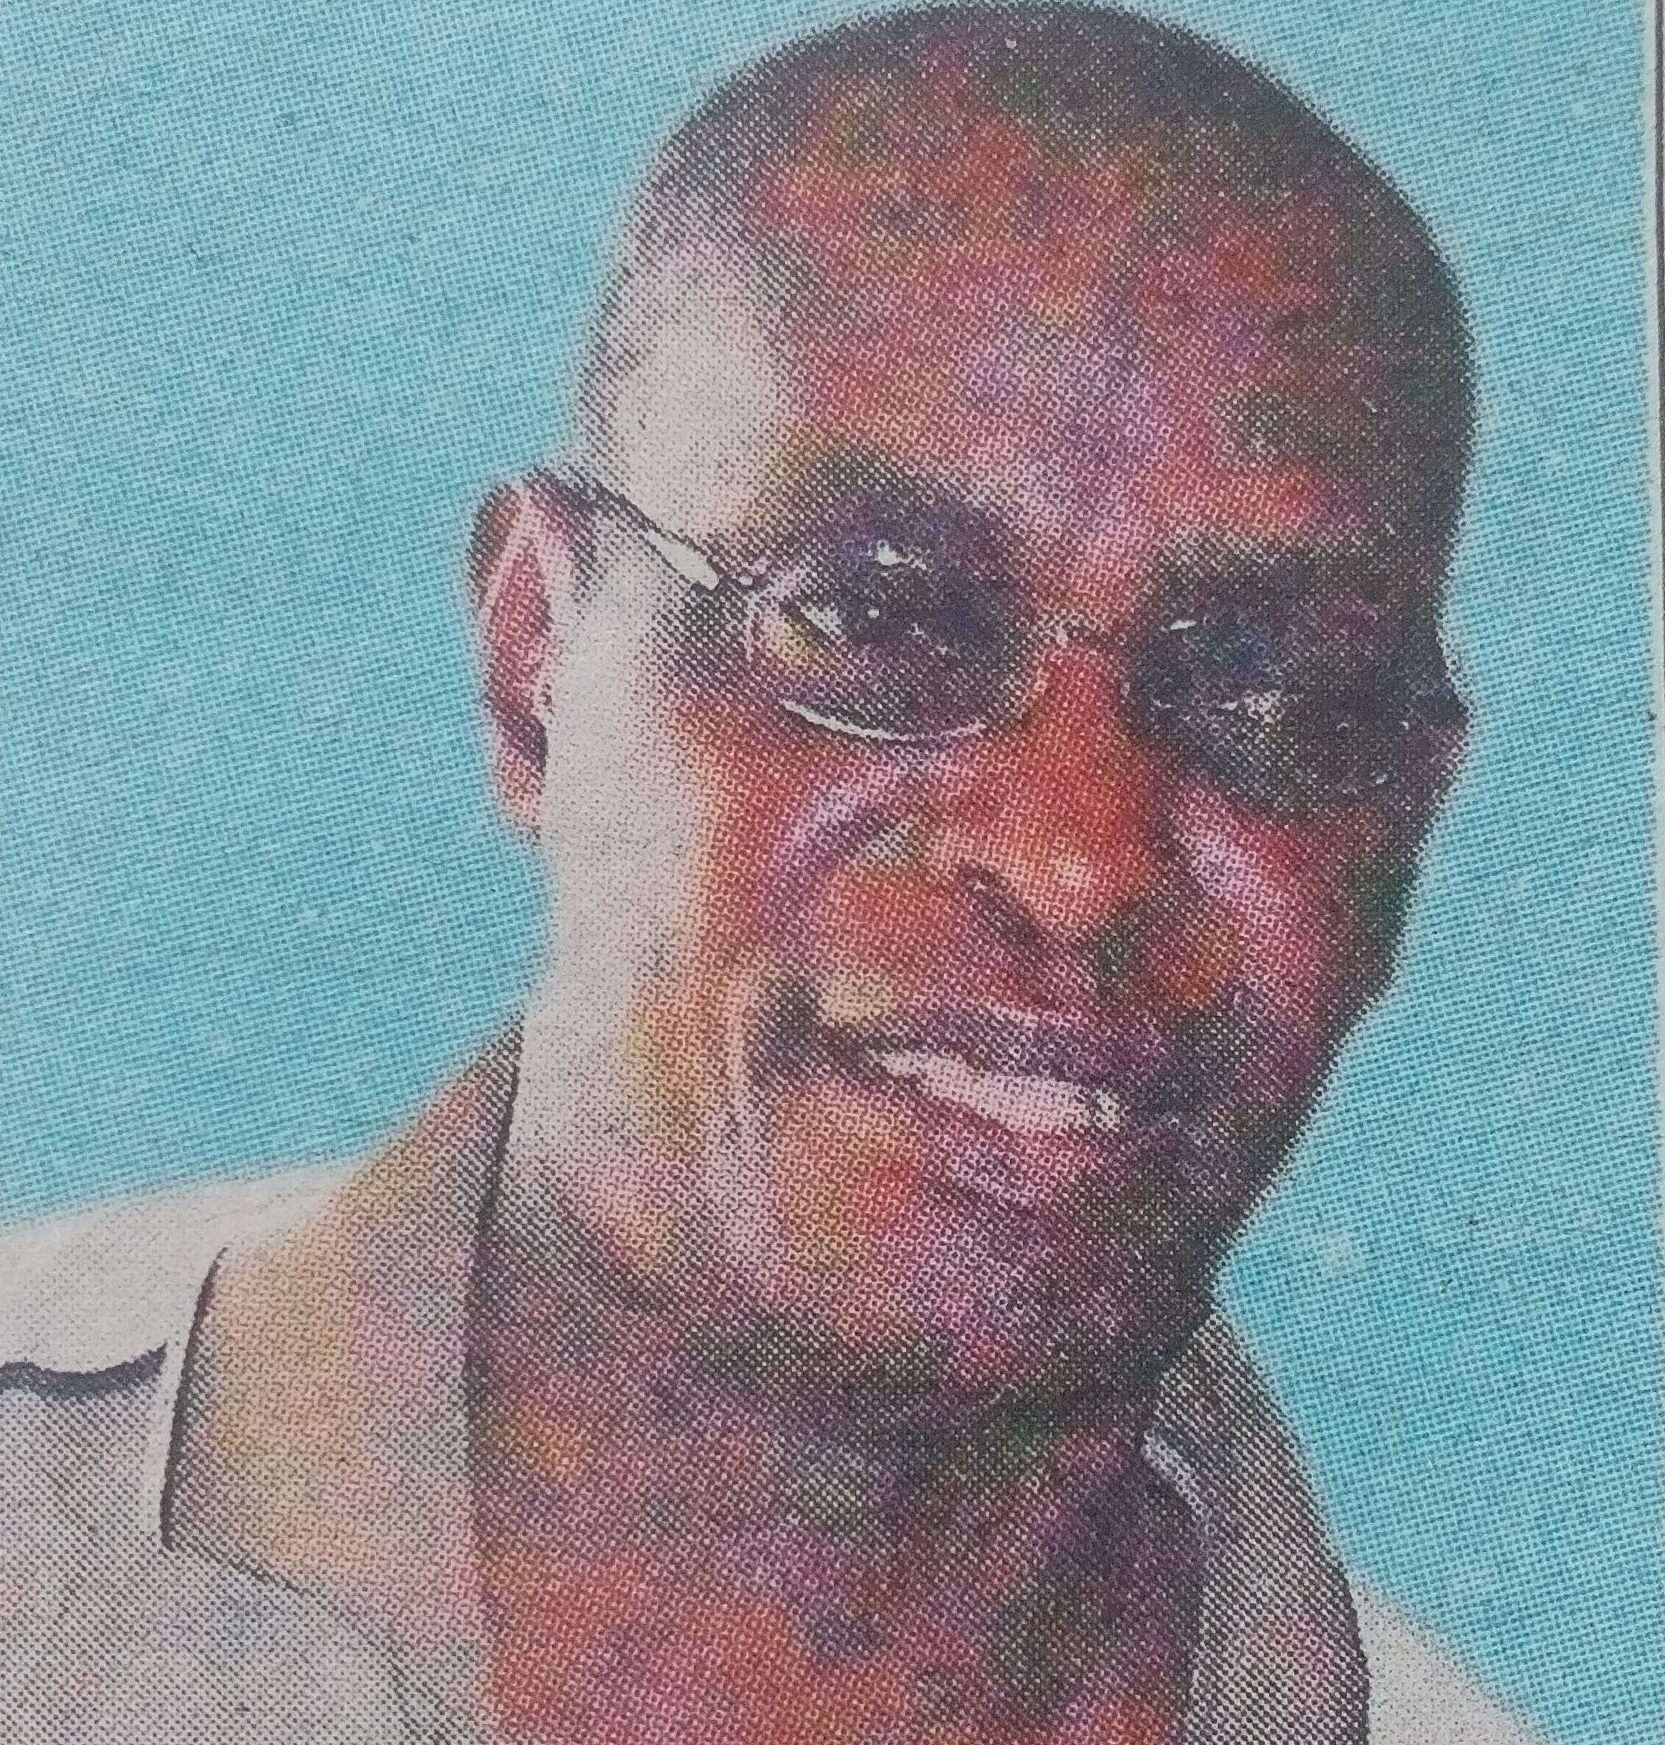 Obituary Image of Dr Ricky Gatumu Ireri of (Kalro Embu)